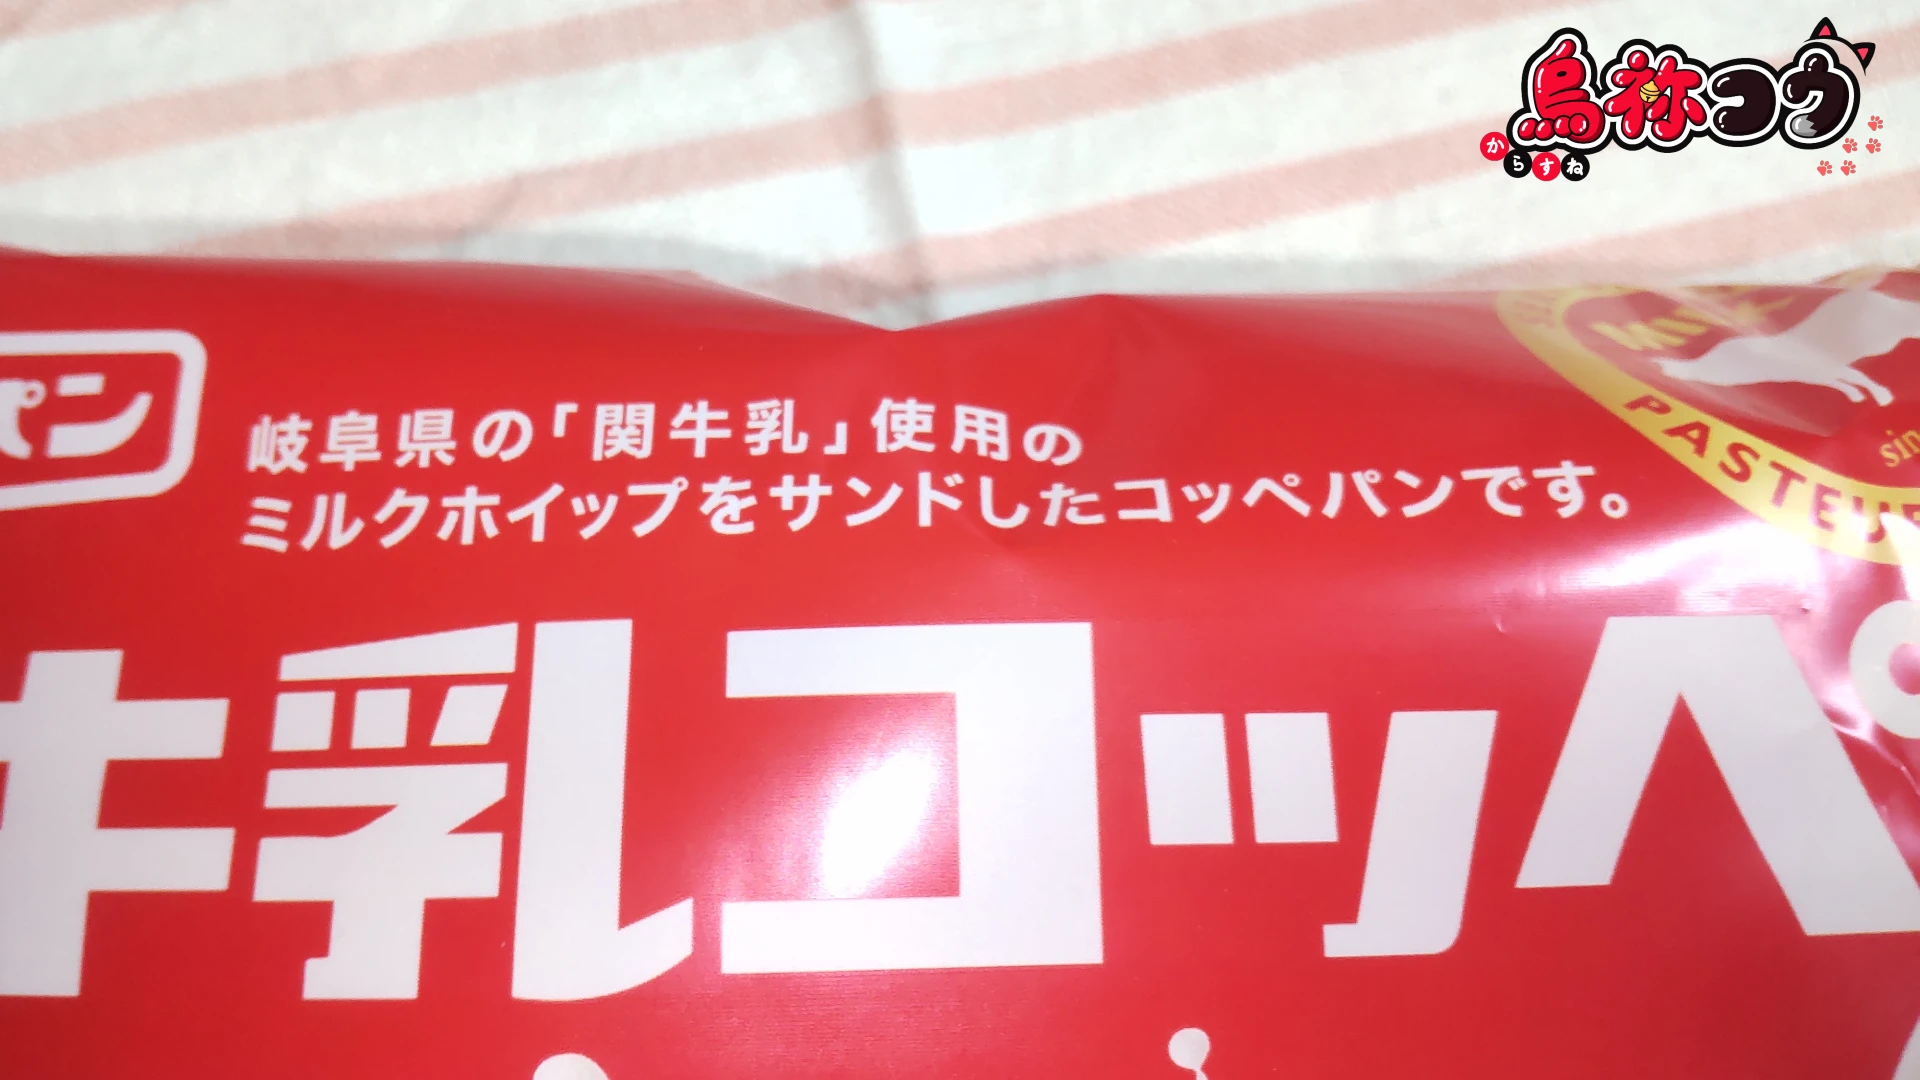 フジパンの関牛乳コッペのパッケージに書かれた「岐阜県の「関牛乳」使用のミルクホイップをサンドしたコッペパンです」の表記です